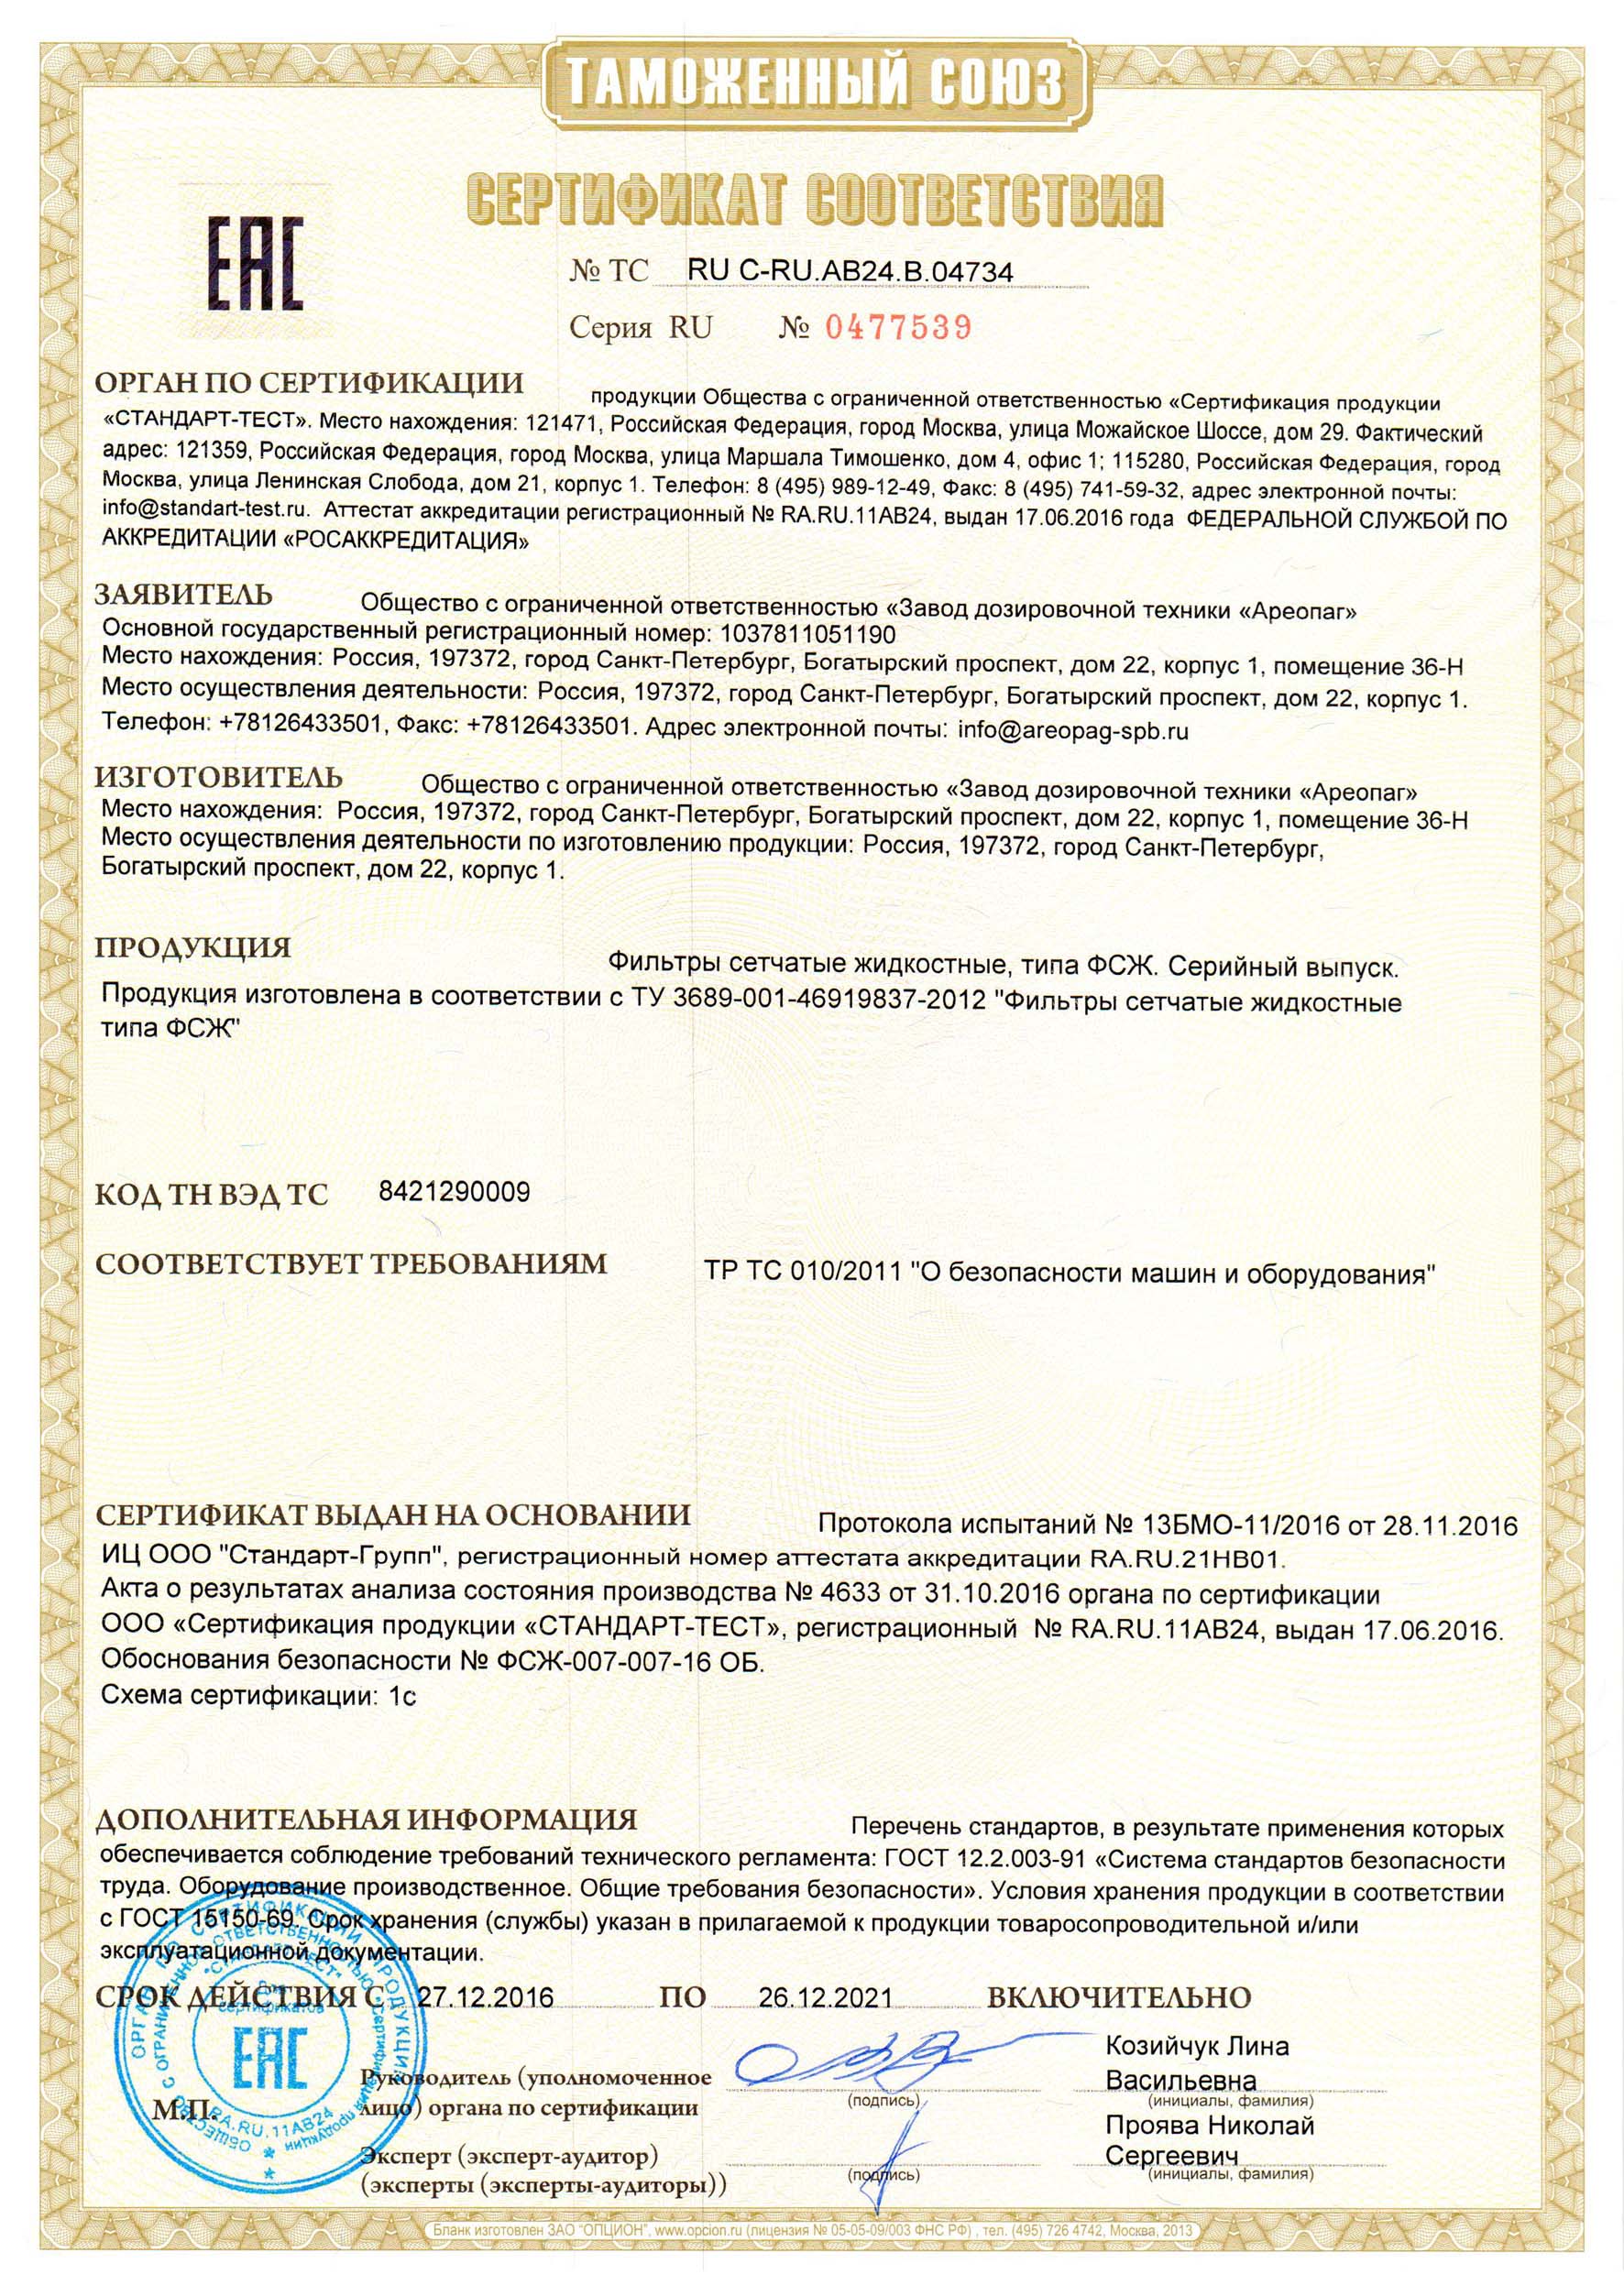 Сертификат соответствия ТС RU C-RU.AB24.В.04734 на фильтры сетчатые жидкостные тип ФСЖ